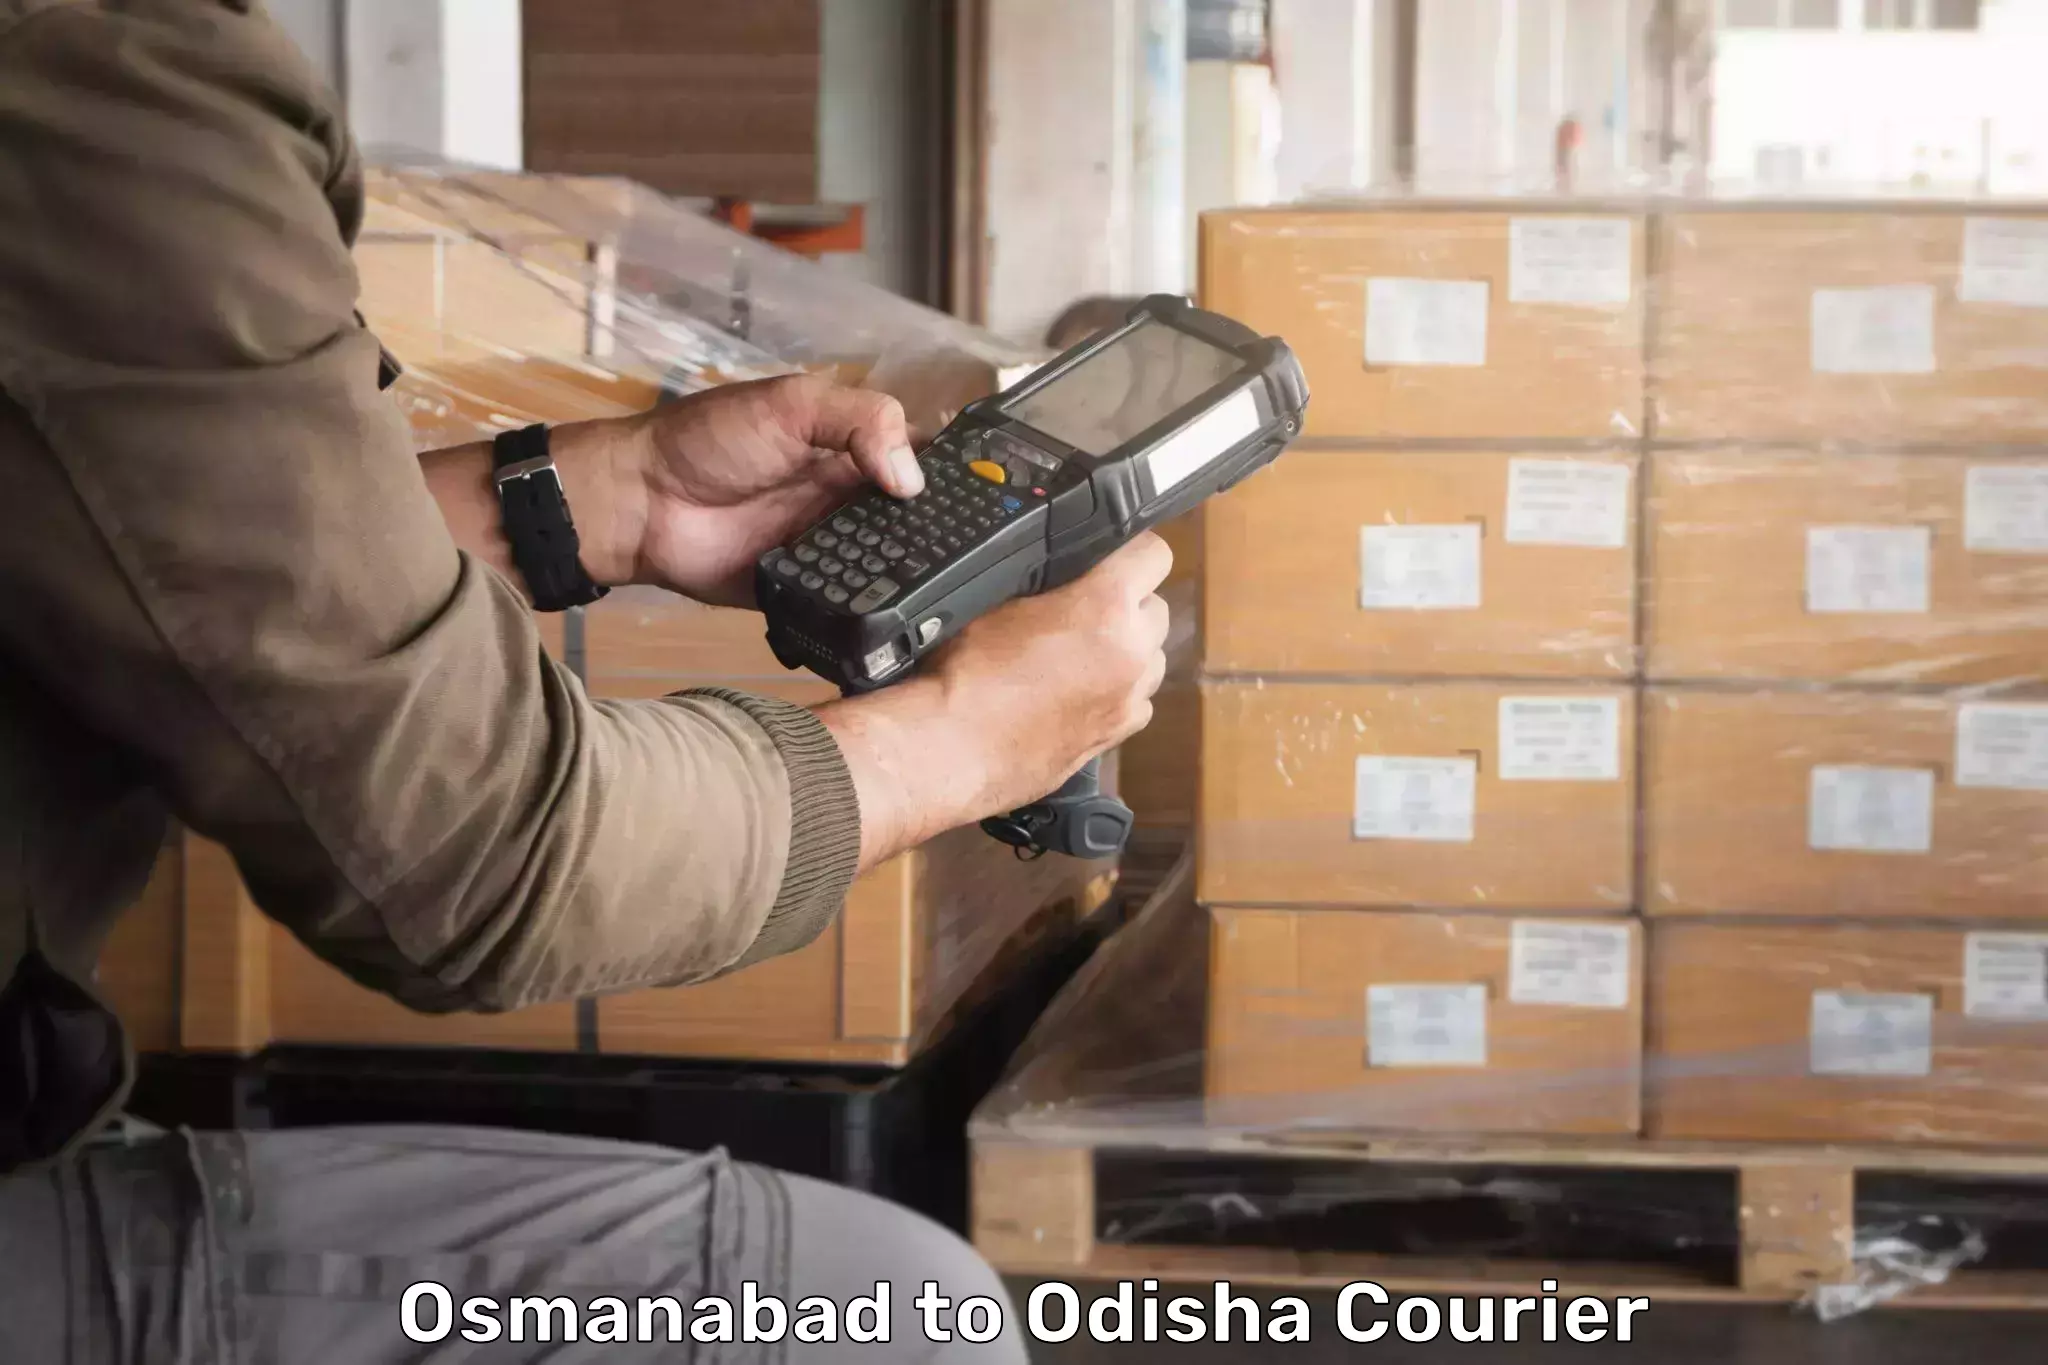 Efficient courier operations Osmanabad to Mahakalapada